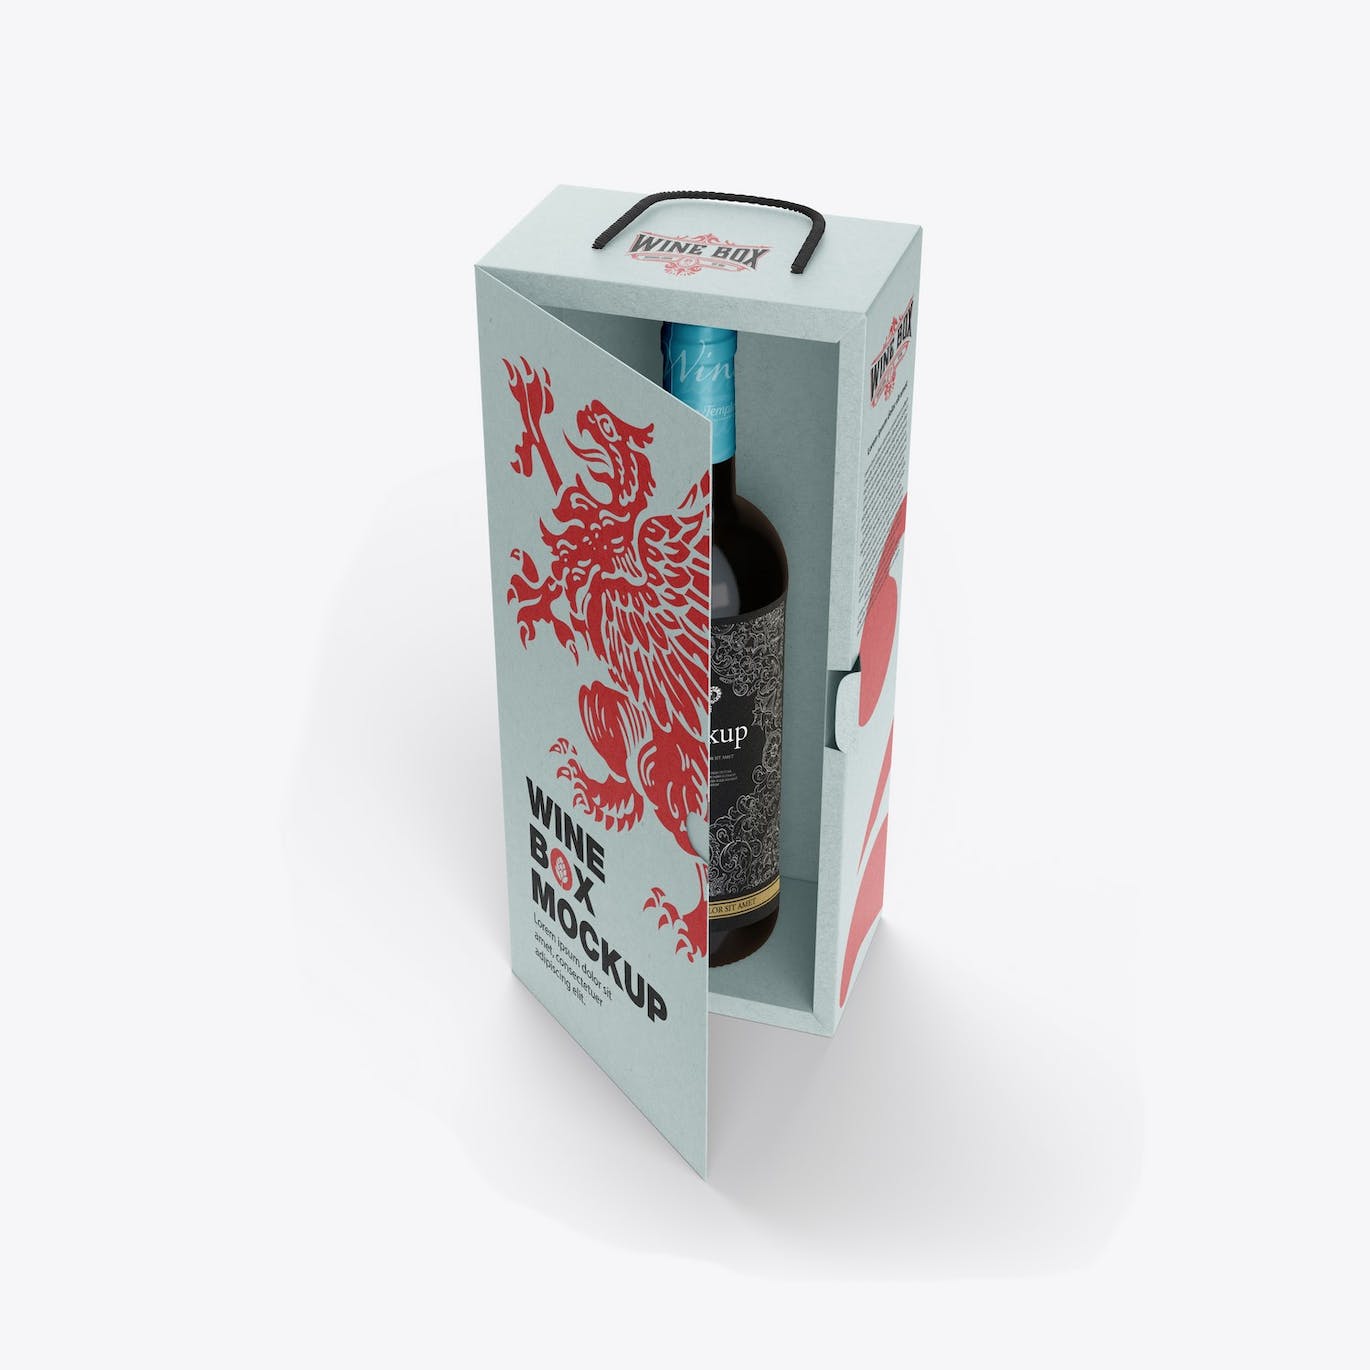 红酒酒瓶纸礼盒品牌包装设计样机 Box with Wine Bottle Mockup 样机素材 第4张